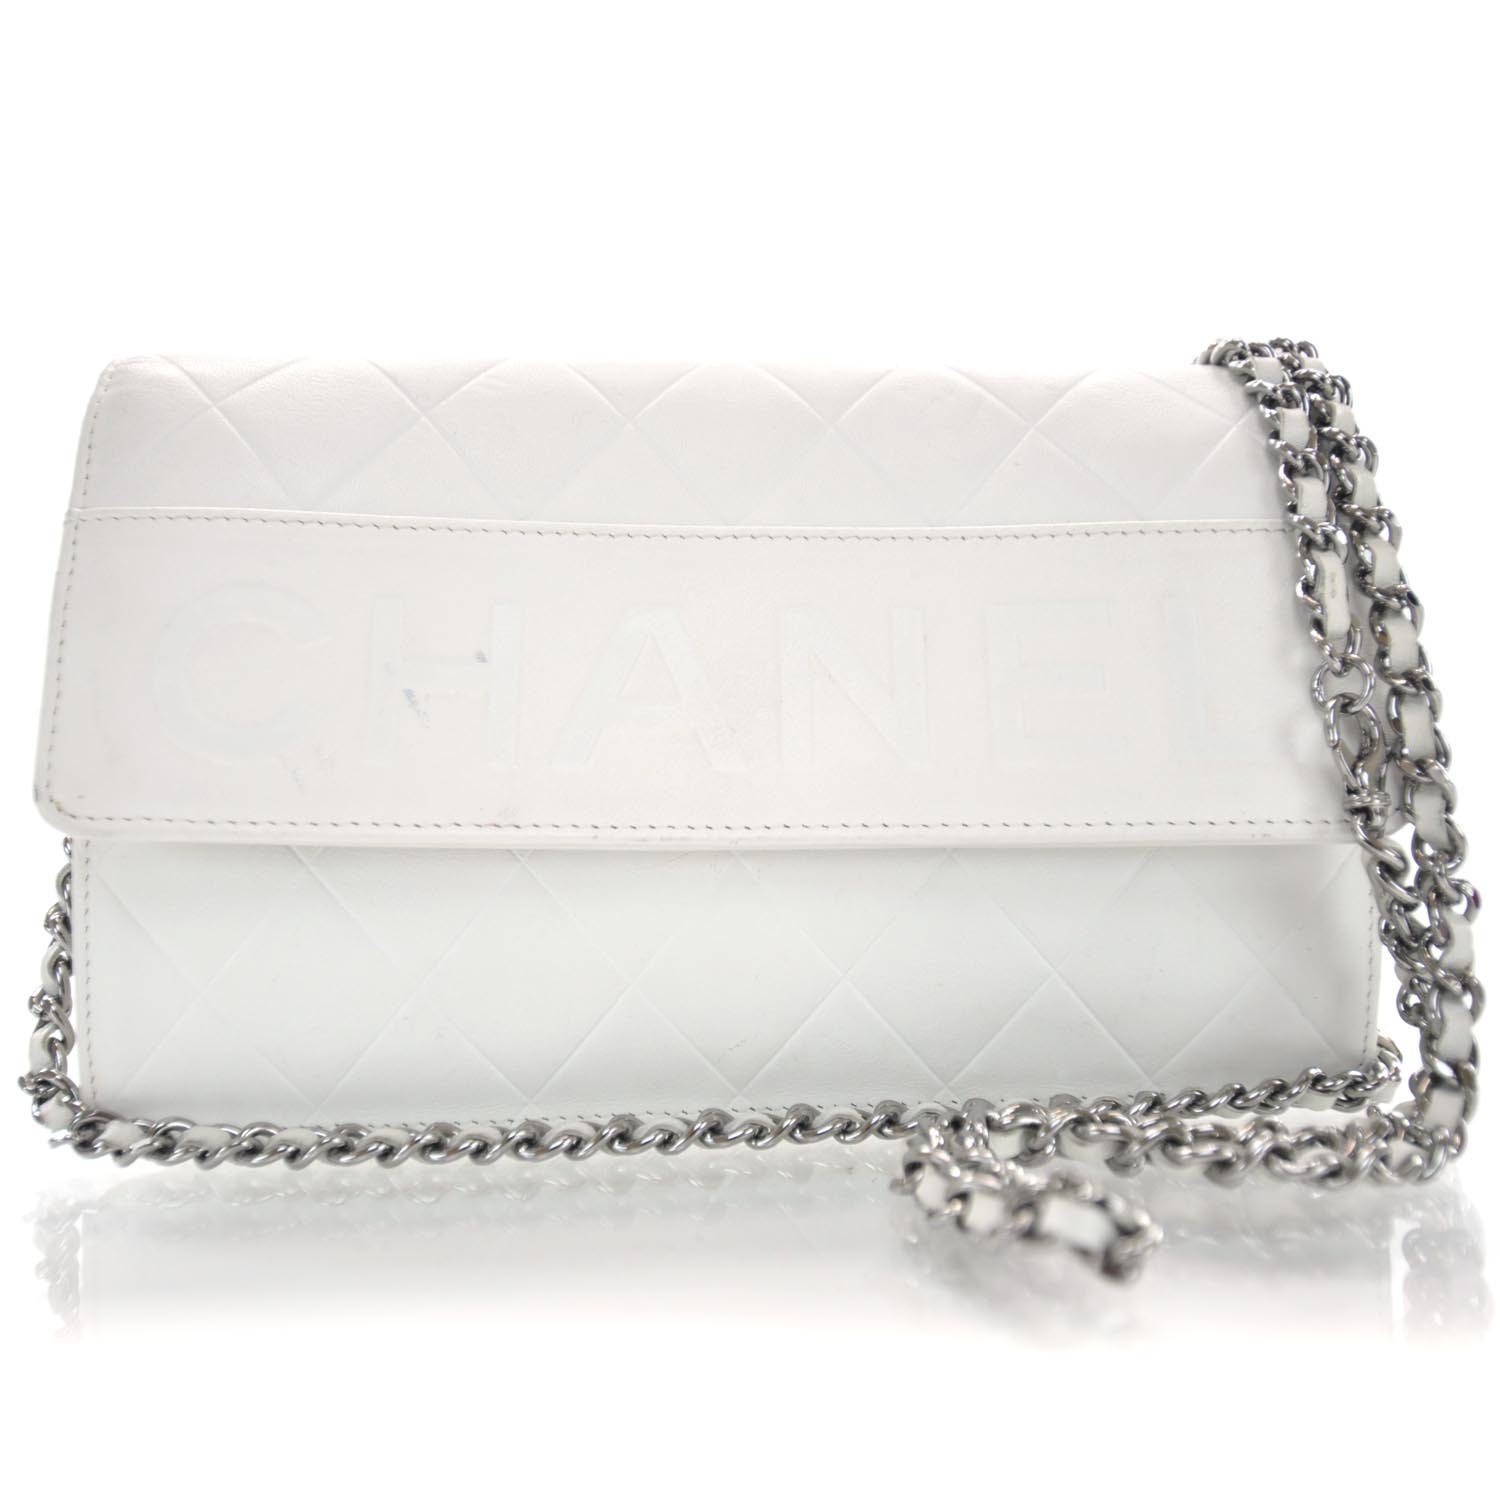 CHANEL Lambskin Wallet On Chain White 30810